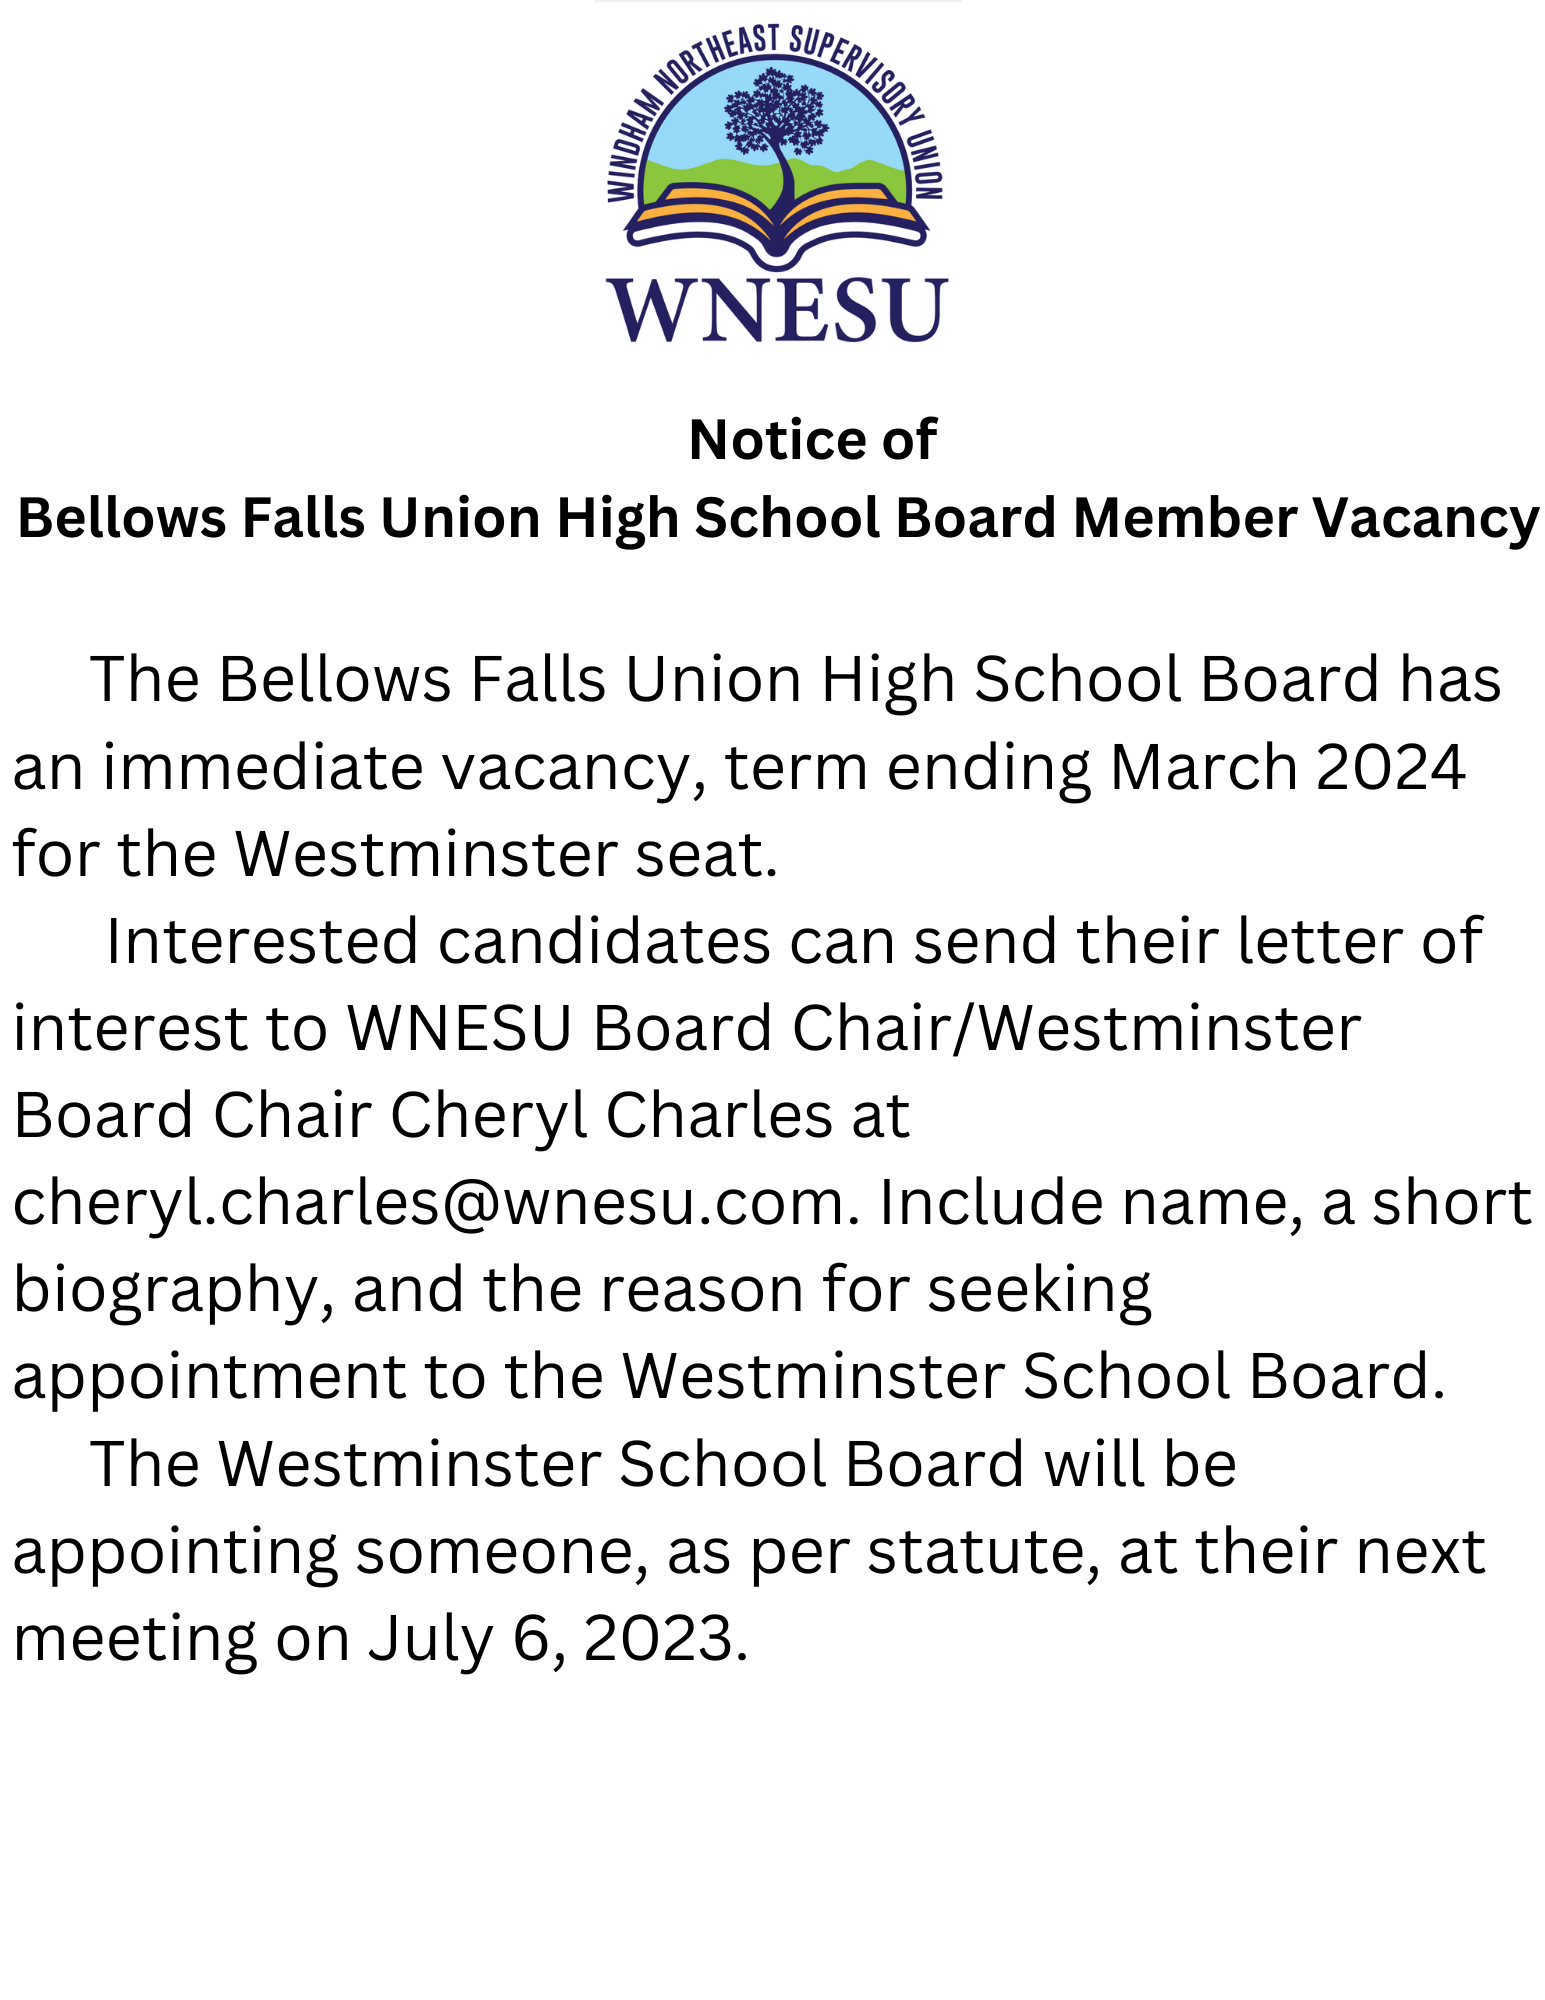 Board vacancy